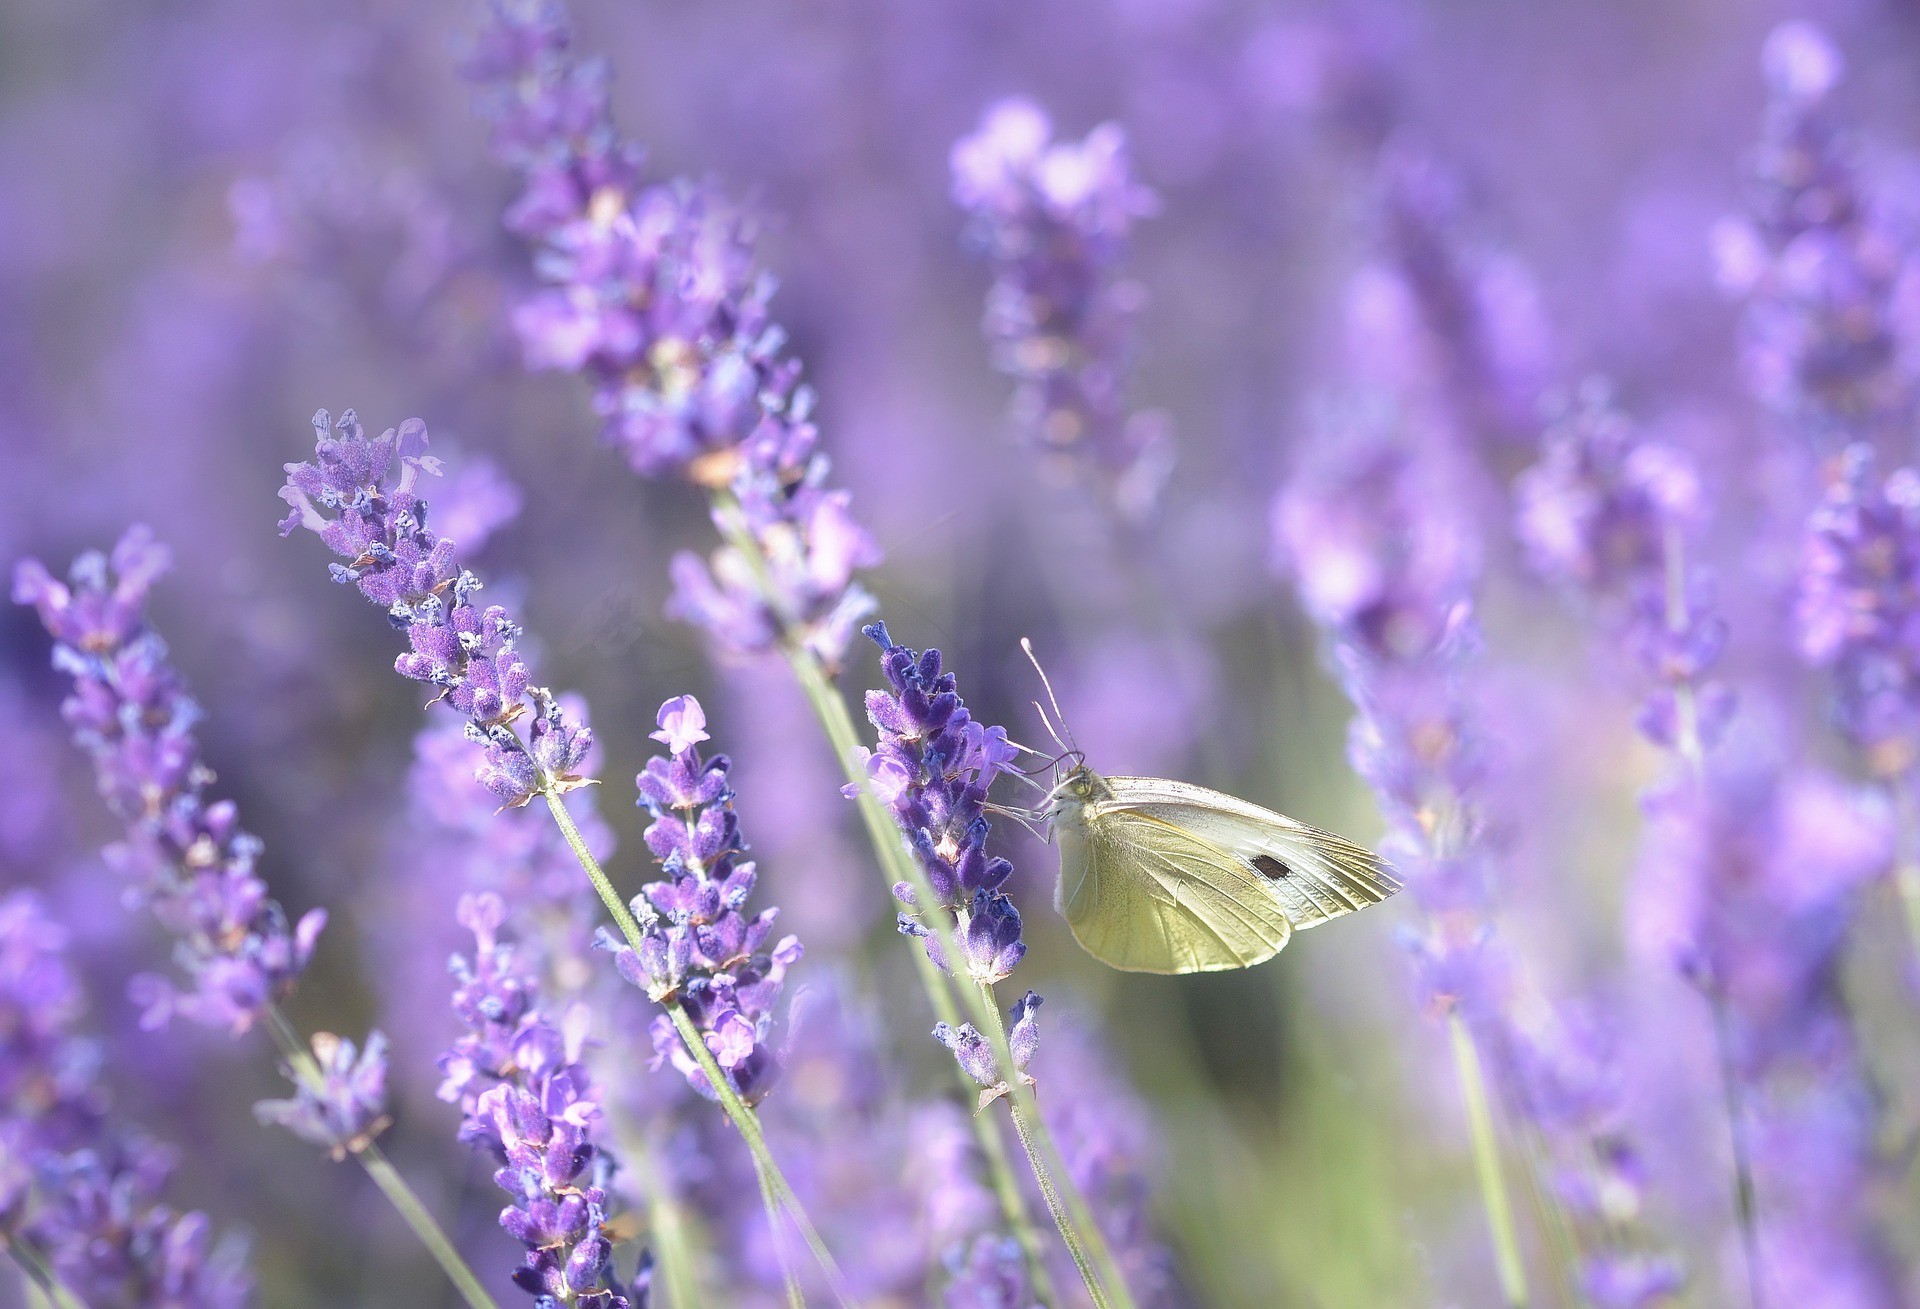 Schmetterling auf Lavendel